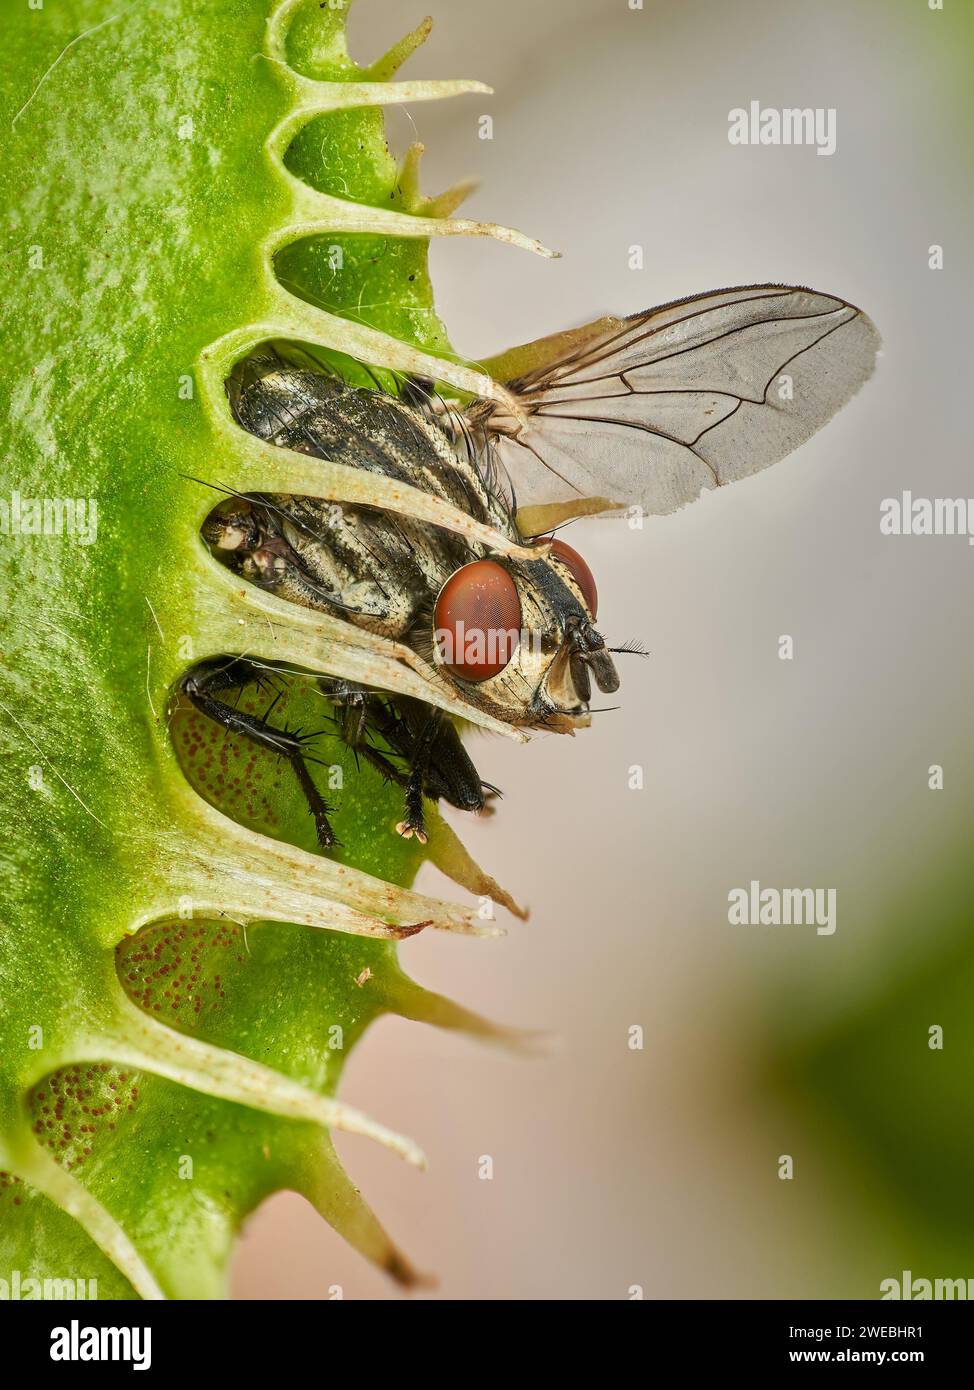 Pequeña mosca atrapada en una trampa de vuelo de venus – no hay manera de escapar Foto de stock